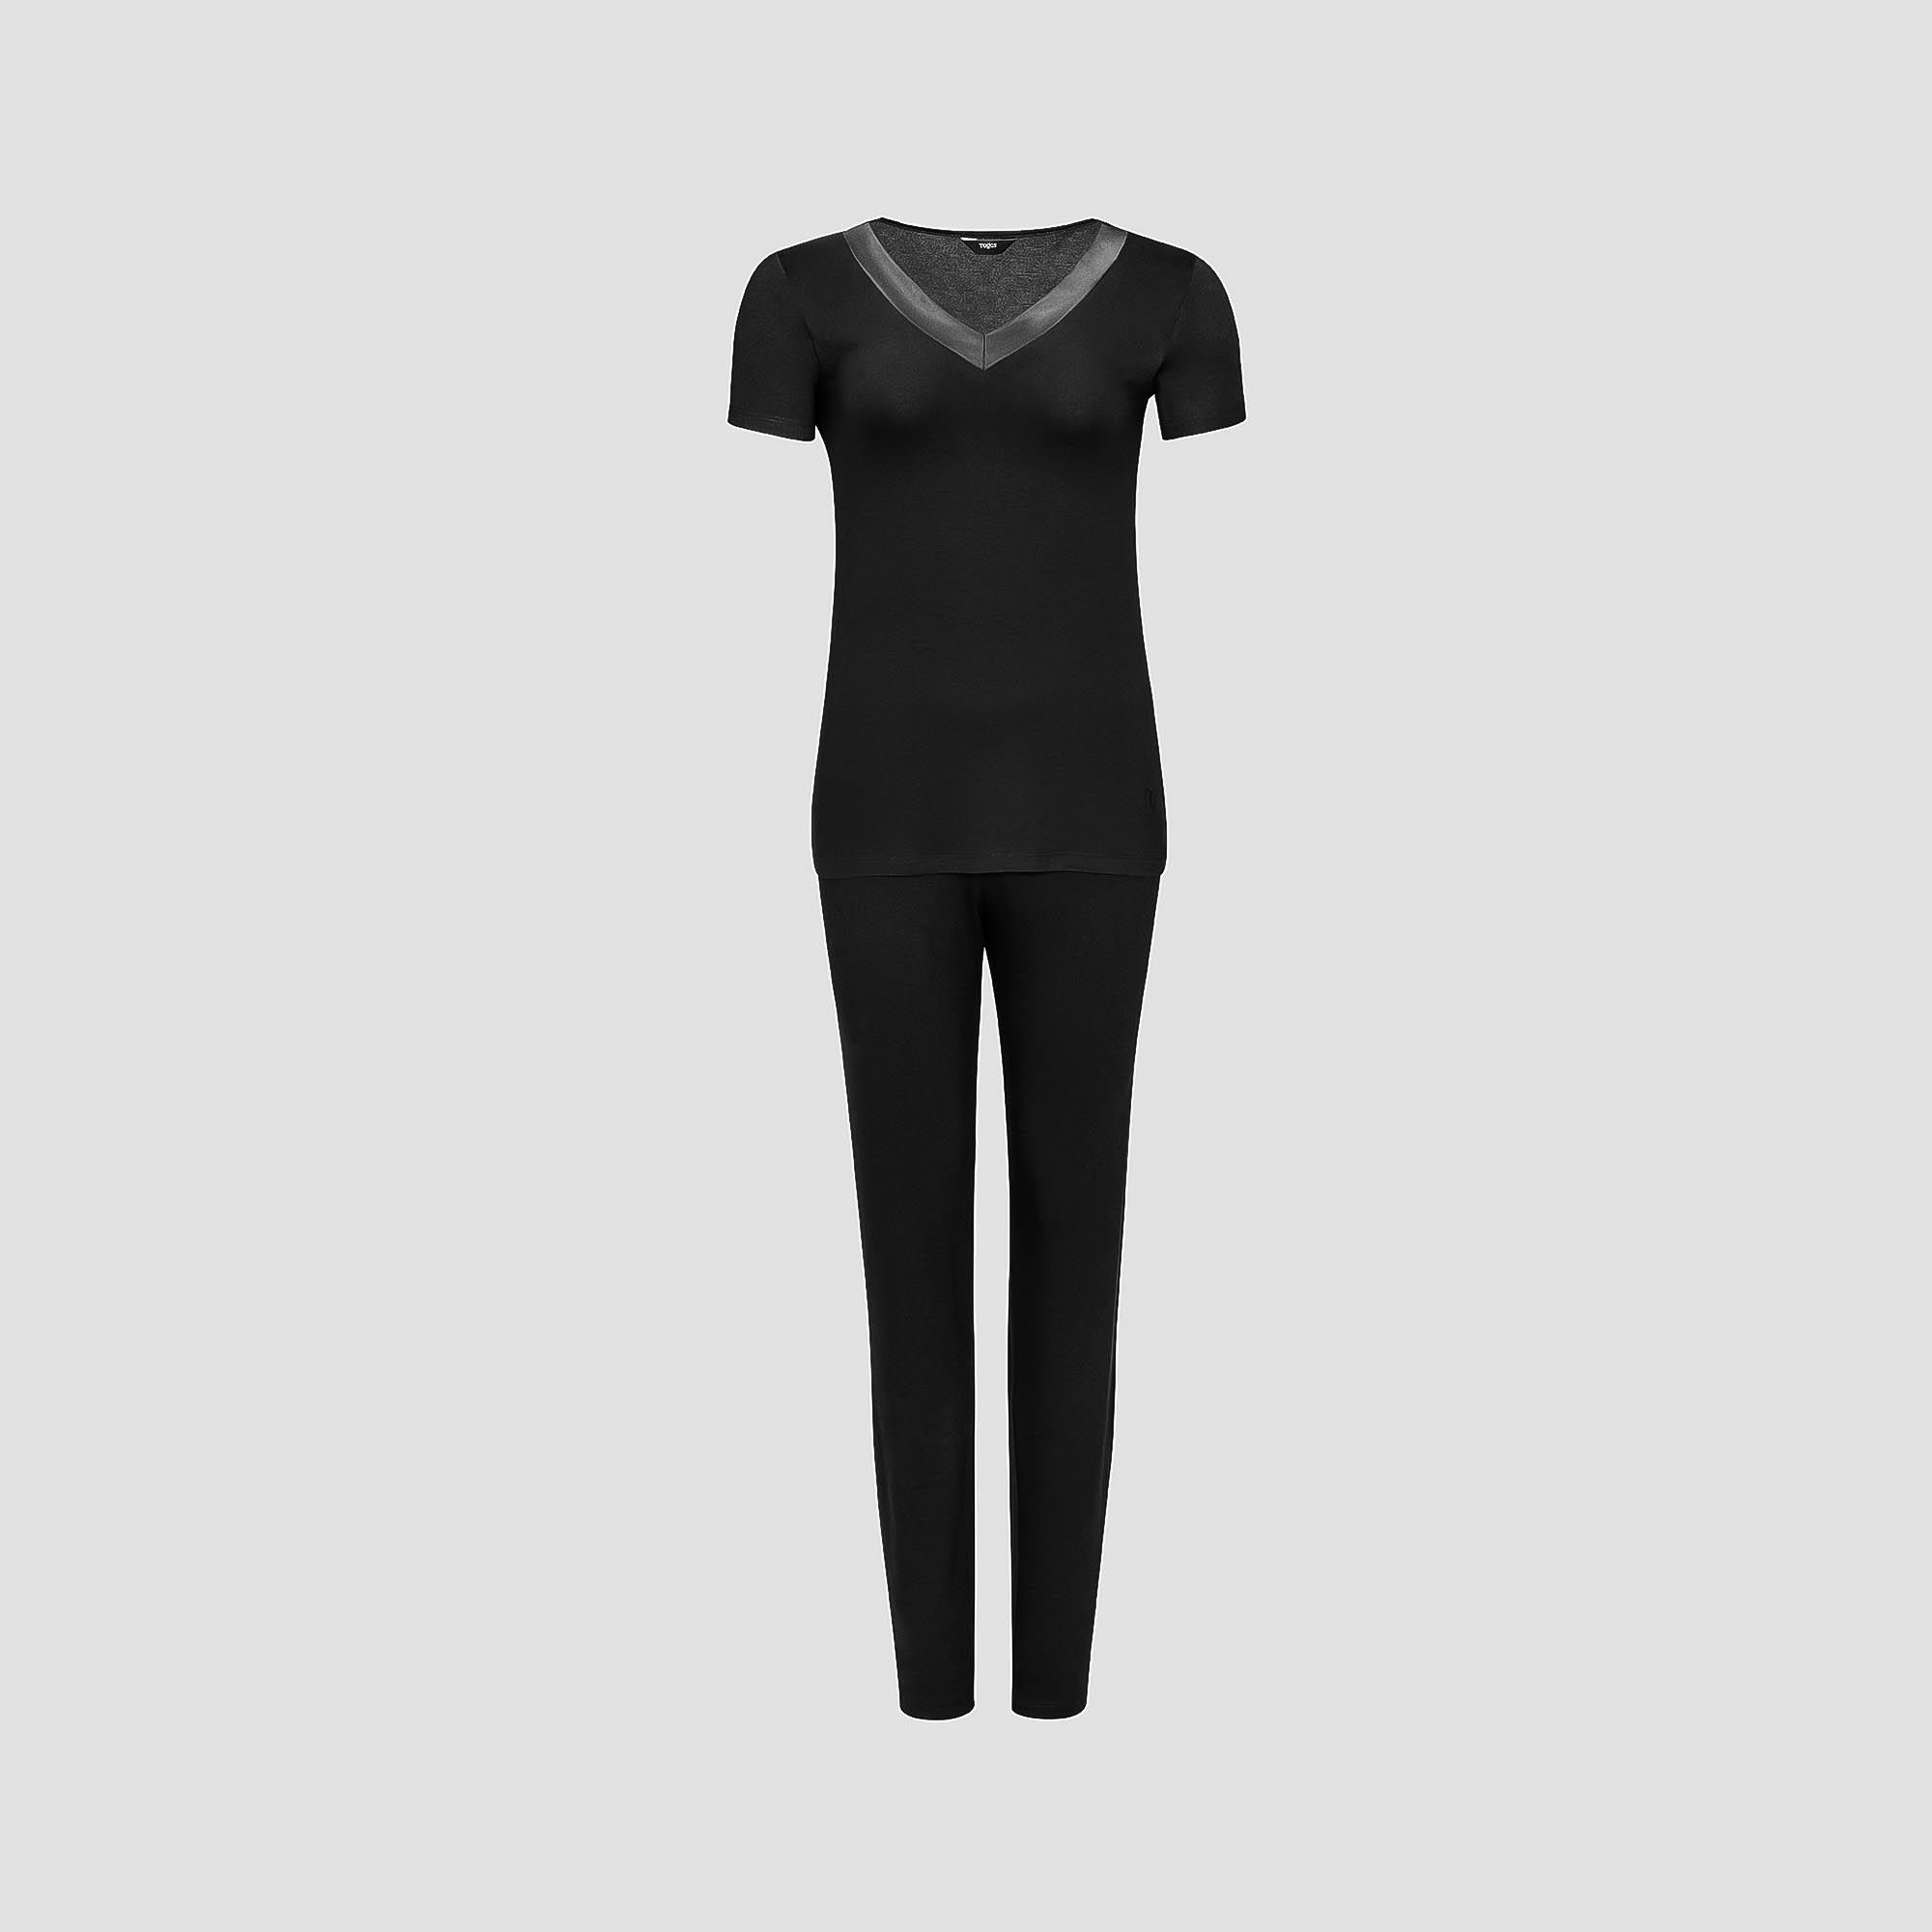 Пижама Togas Ингелла черная женская S(44) 2 предмета жен пижама с шортами арт 23 0106 бордовый р 44